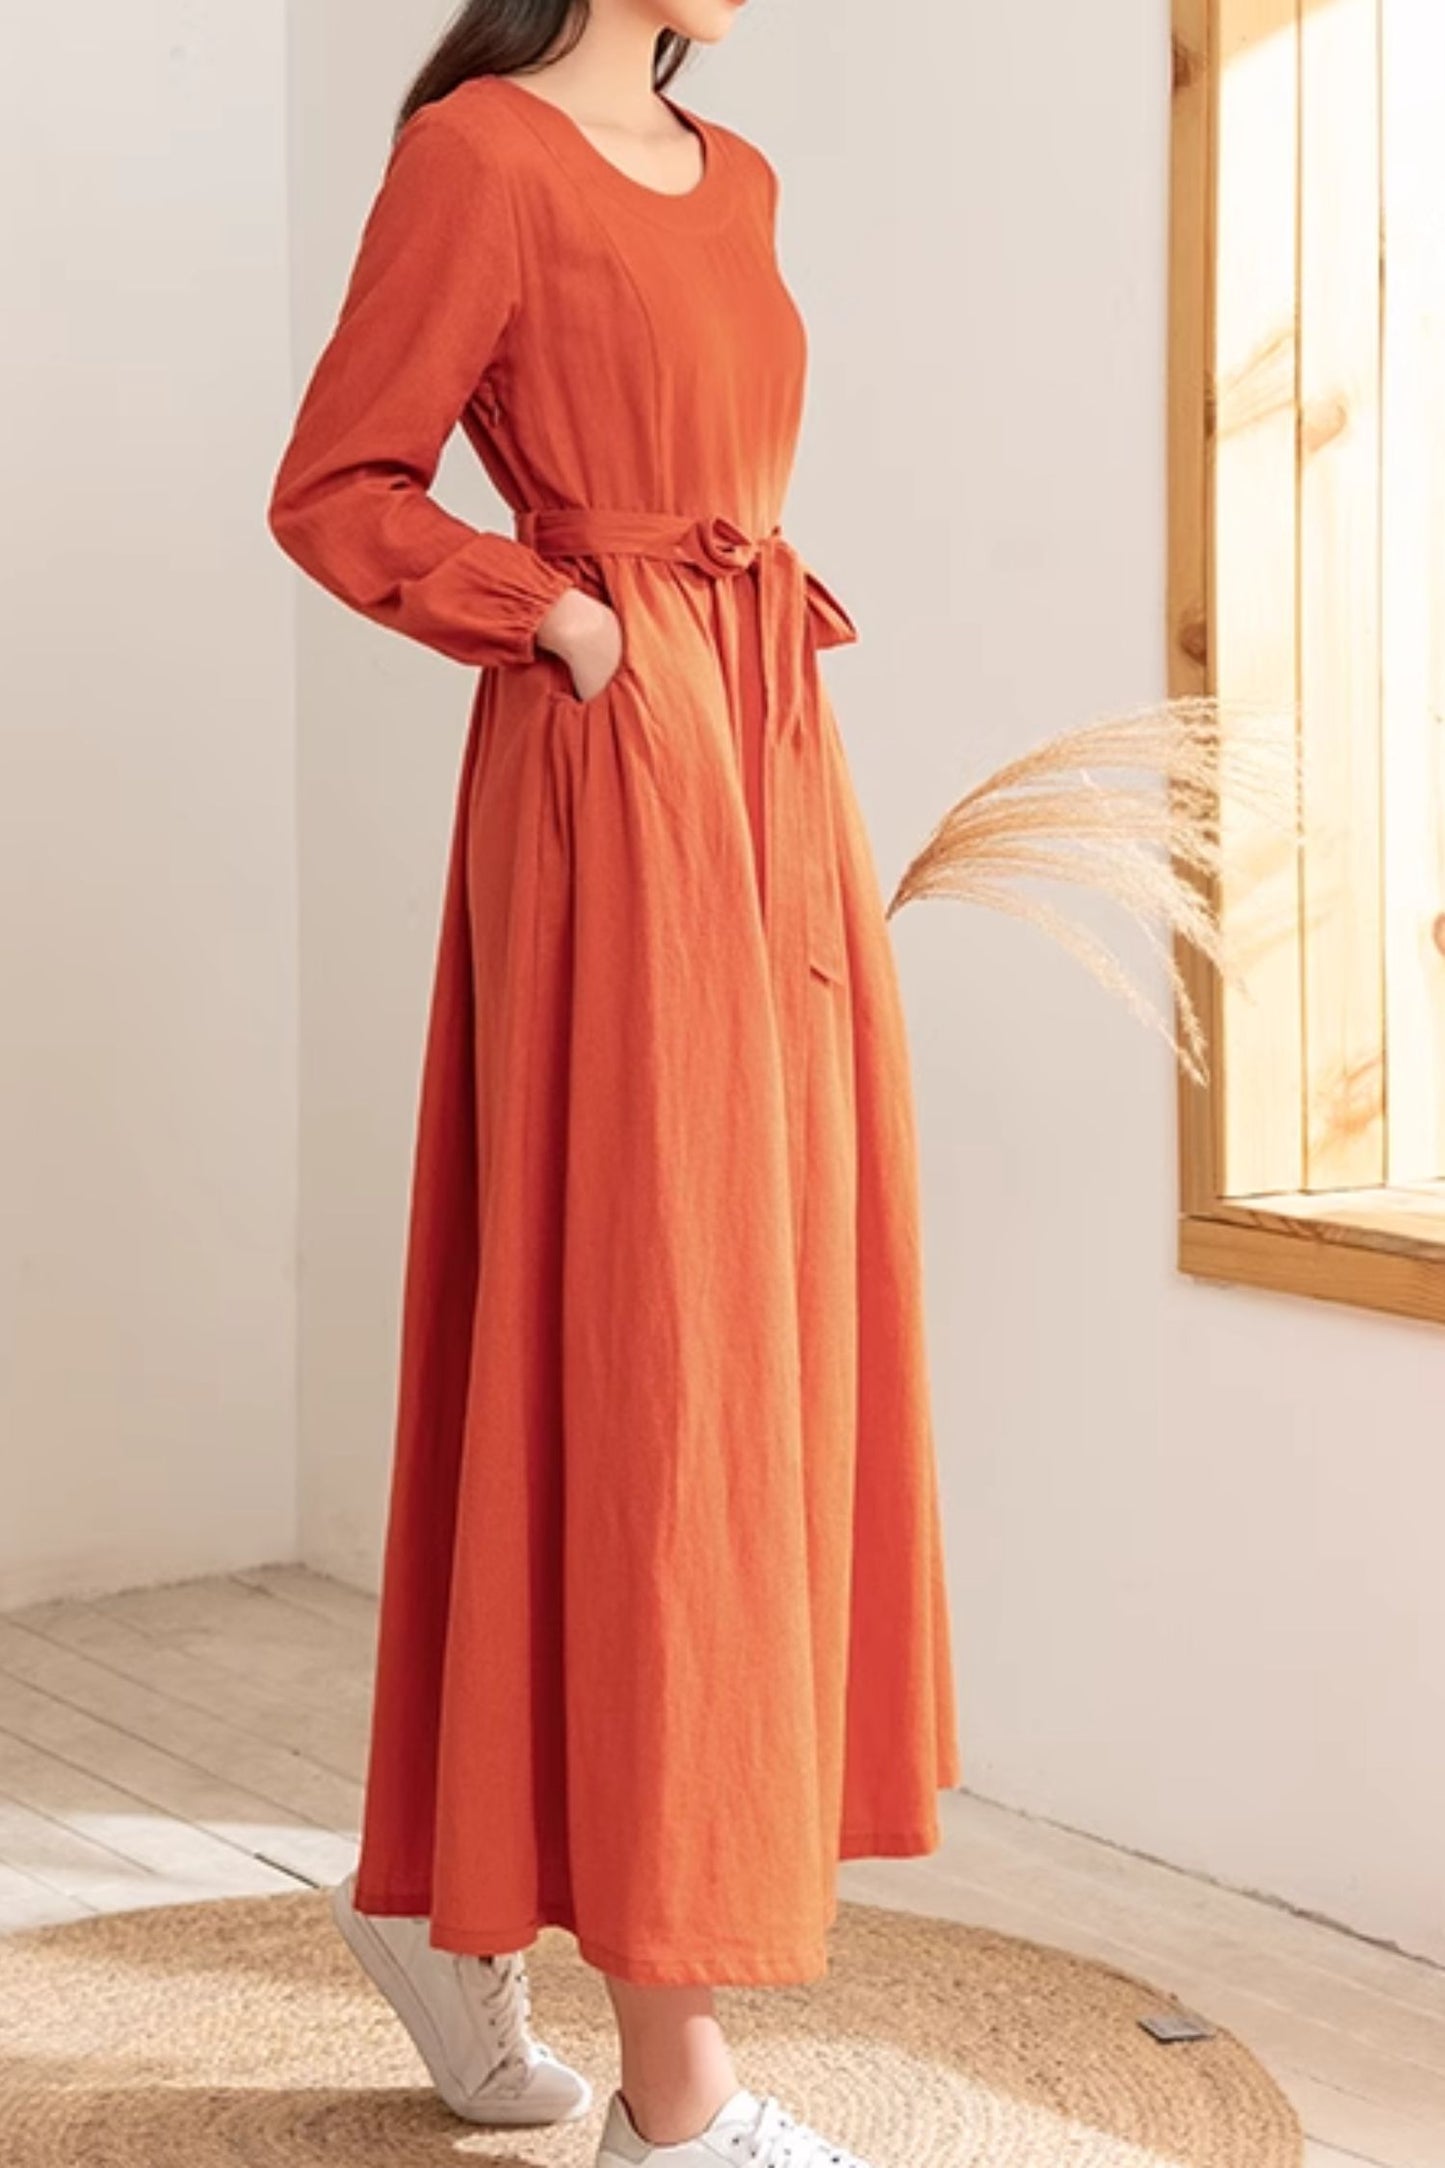 Plus size maxi spring linen dress 4818